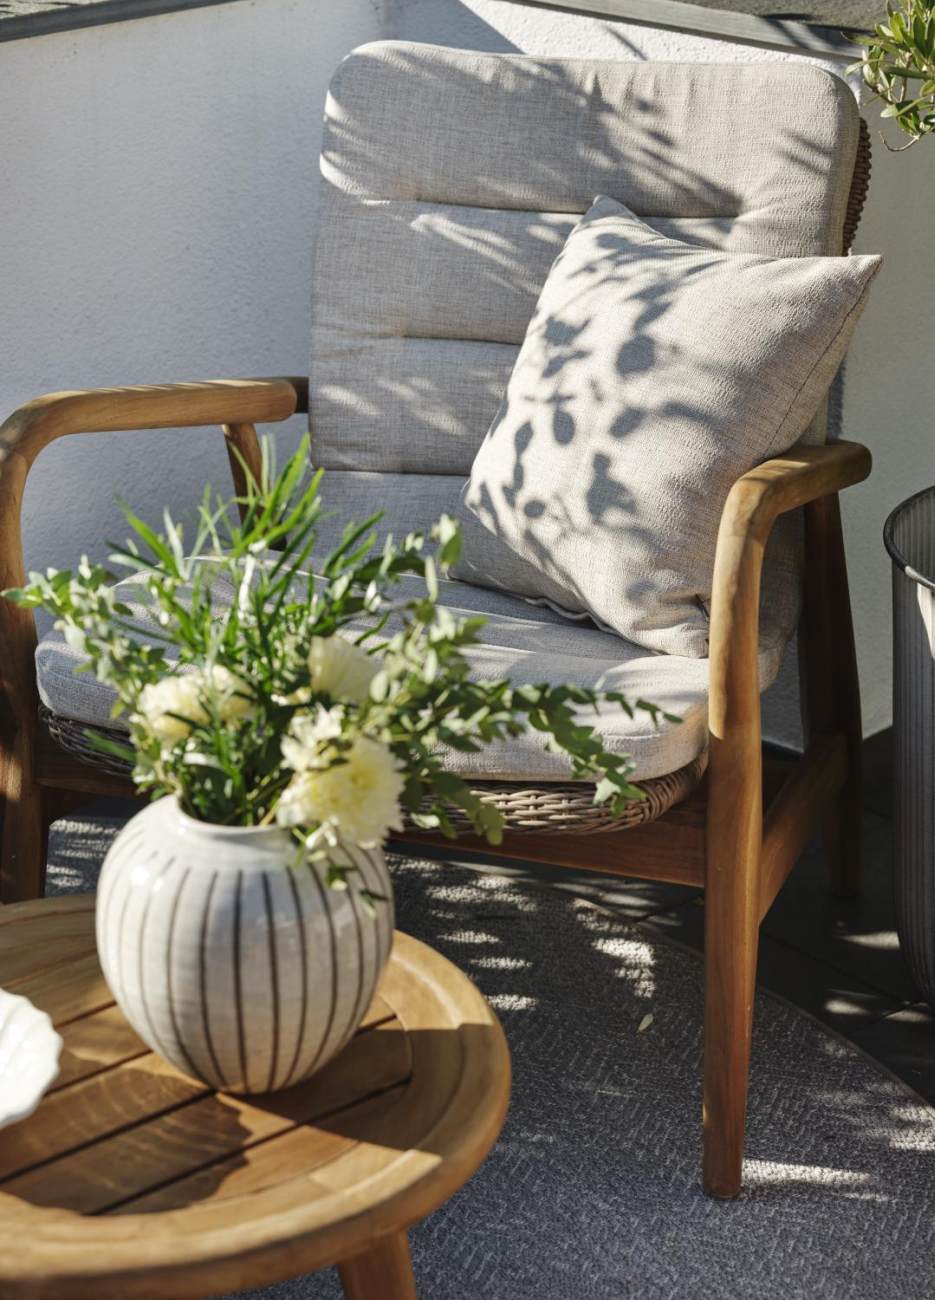 Der Gartenbeistelltisch Lilja überzeugt mit seinem modernen Design. Gefertigt wurde die Tischplatte aus Teakholz und hat eine natürliche Farbe. Das Gestell ist auch aus Teakholz und hat eine natürliche Farbe. Der Tisch besitzt einen Durchmesser von 50 cm.